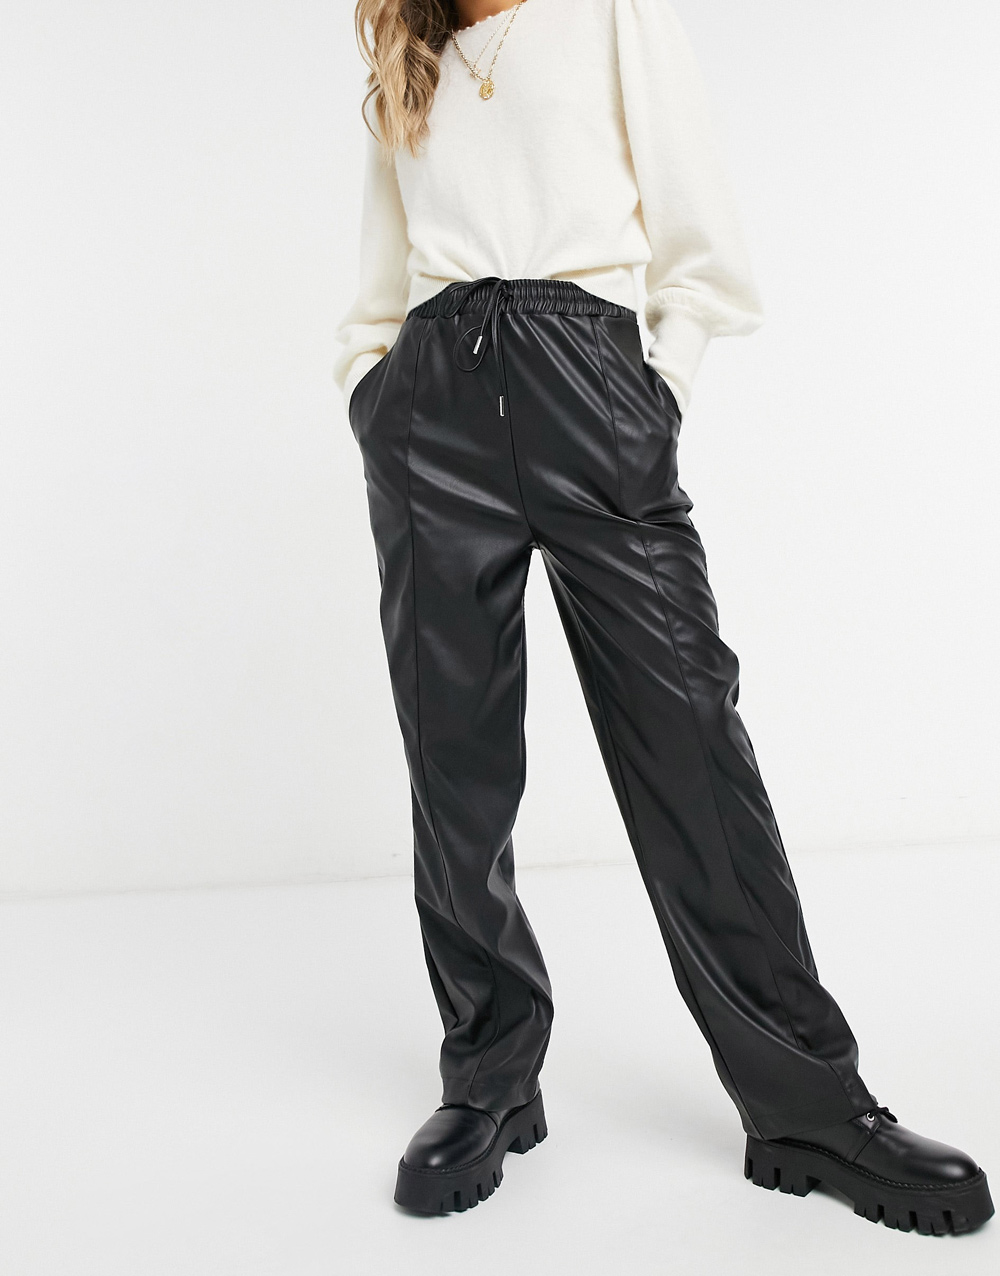 ASOS Design kožne hlače jogger model 2021.